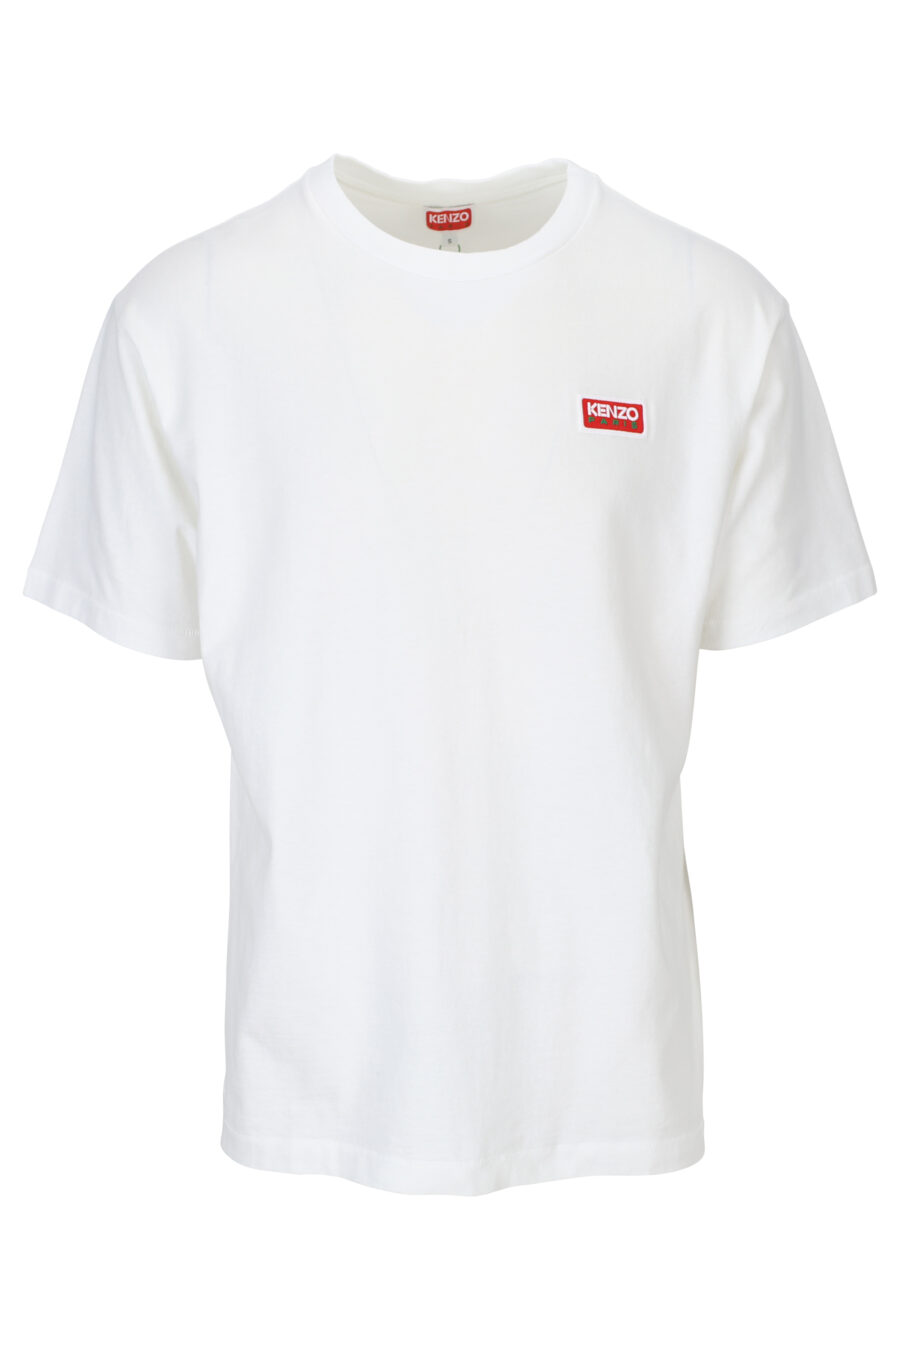 T-shirt blanc avec maxilogo "kenzo paris" dans le dos - 3612230543140